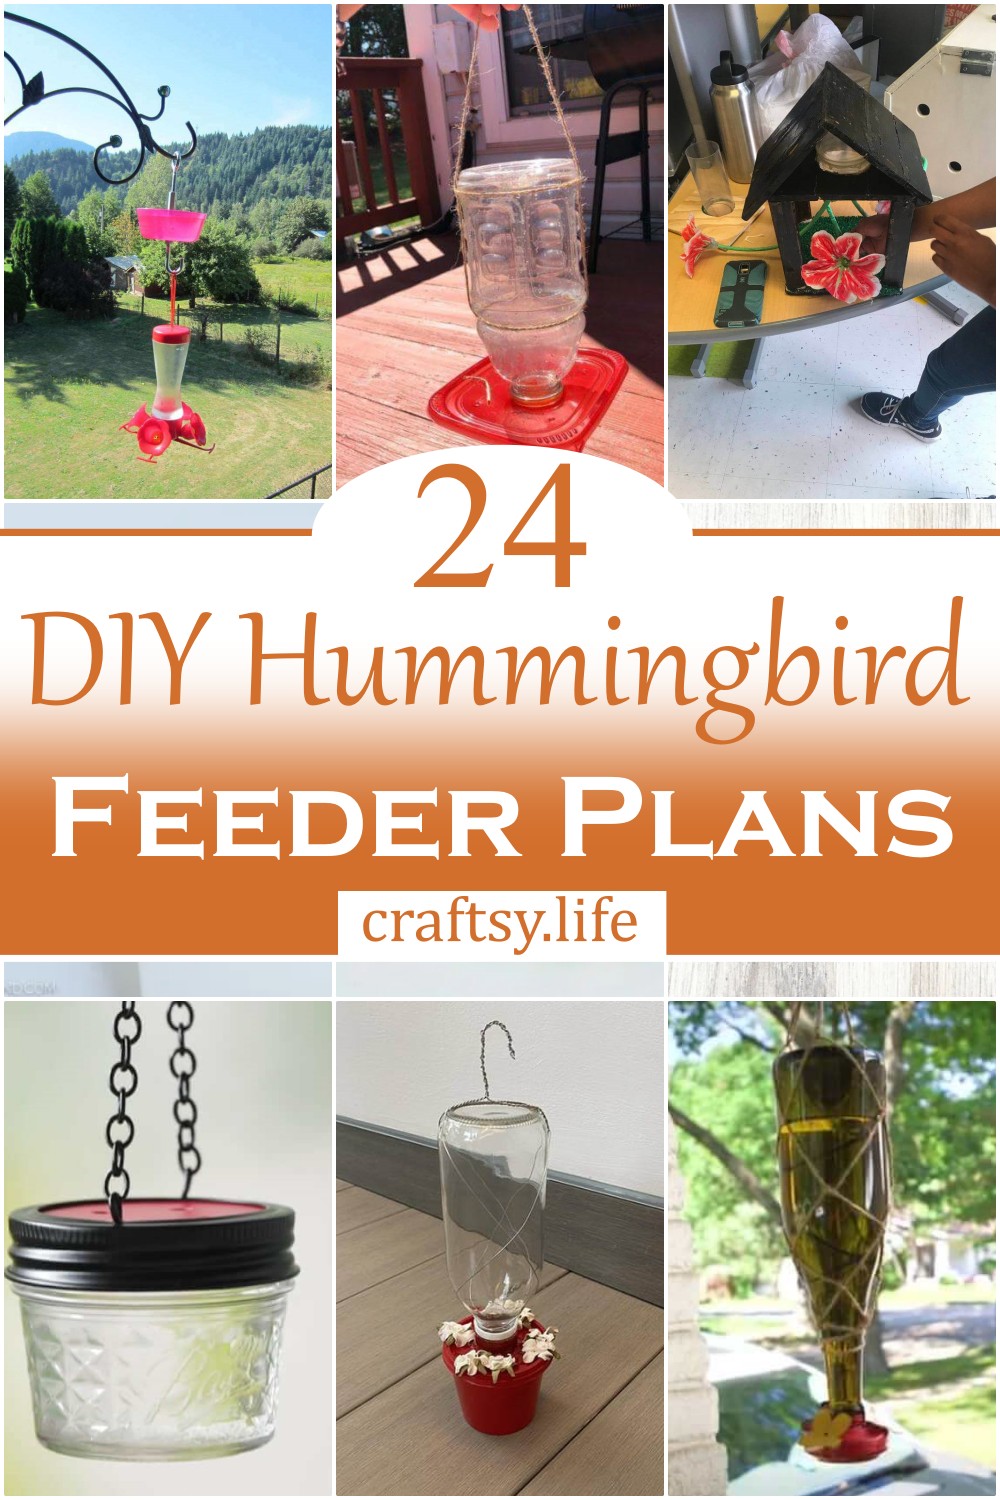 DIY Hummingbird Feeder Plans 1